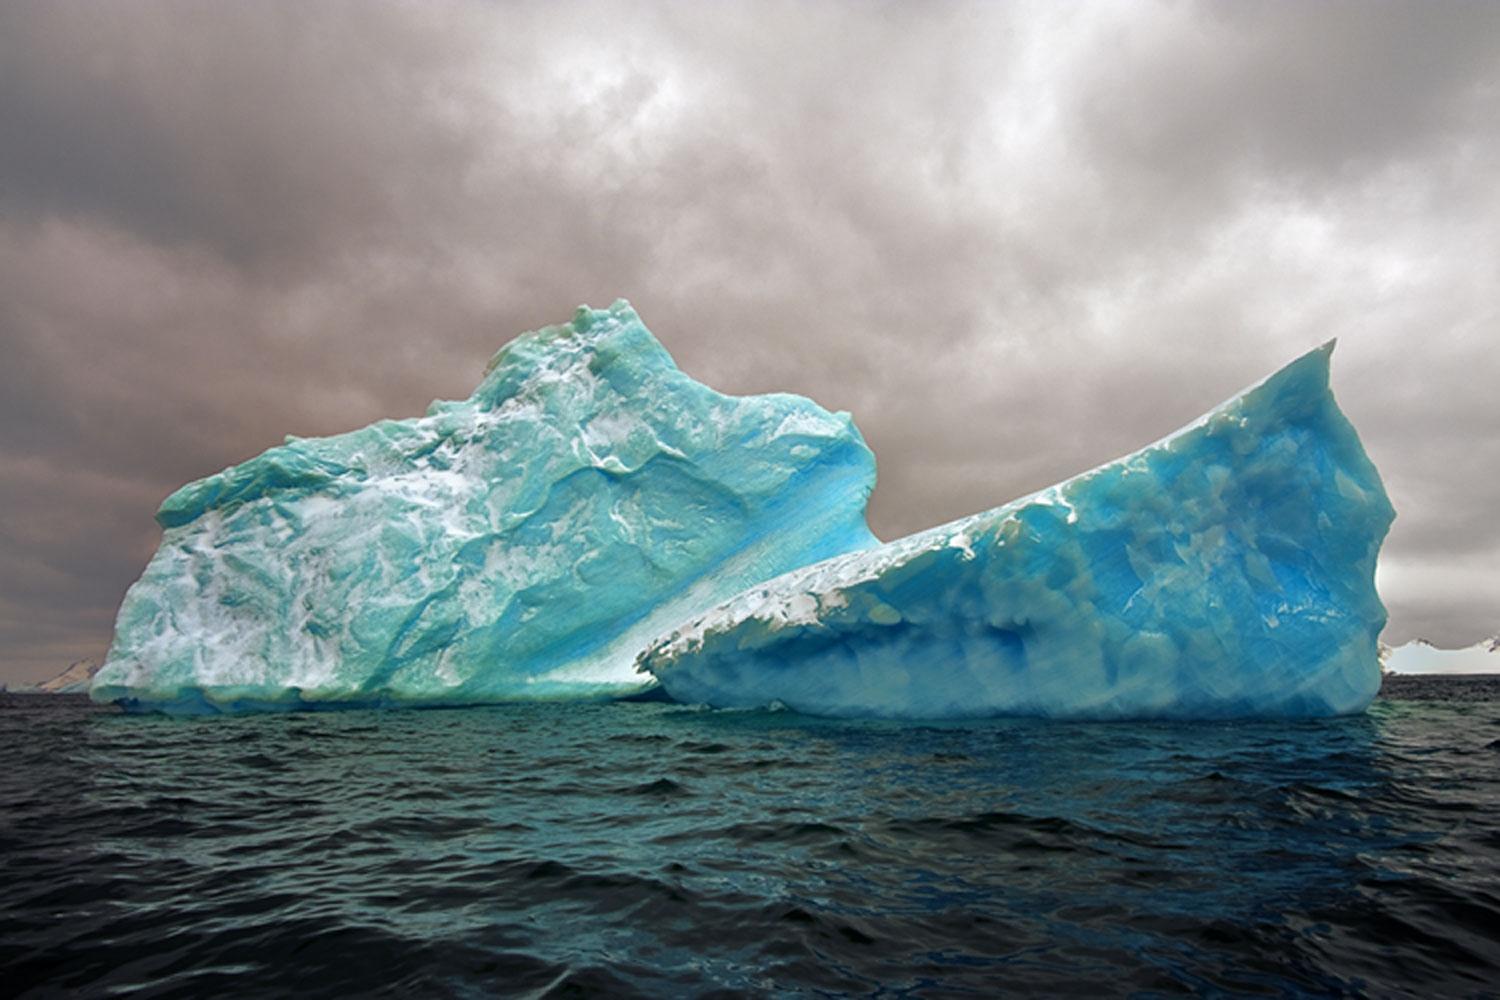 Landscape Photograph John Conn - Antarctica 98 Petite photographie couleur  Icebergs, Voyage, Edition limitée